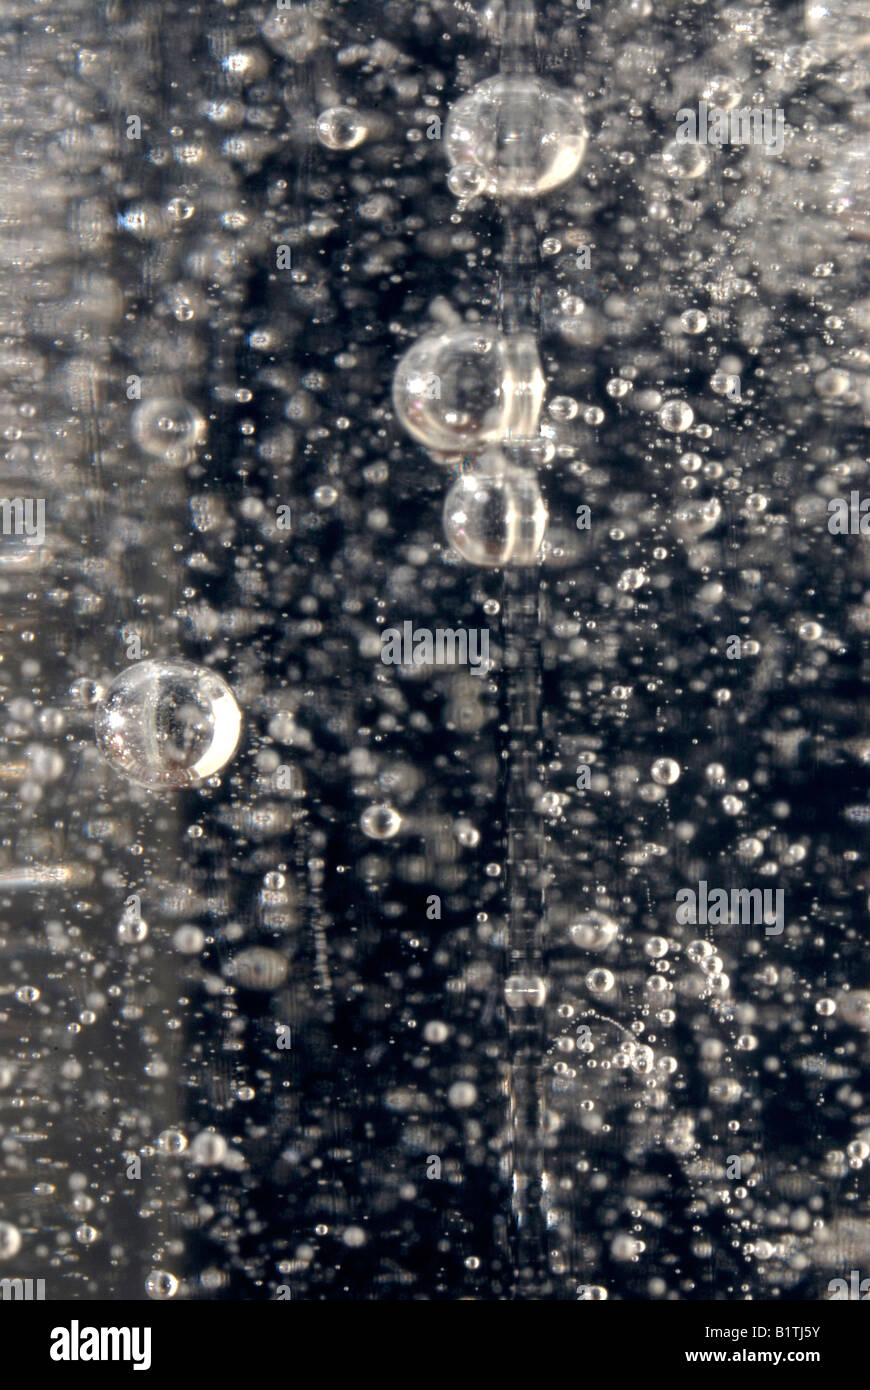 Luftblasen steigen in eine Flasche Shampoo - eine zähe Flüssigkeit. Stockfoto